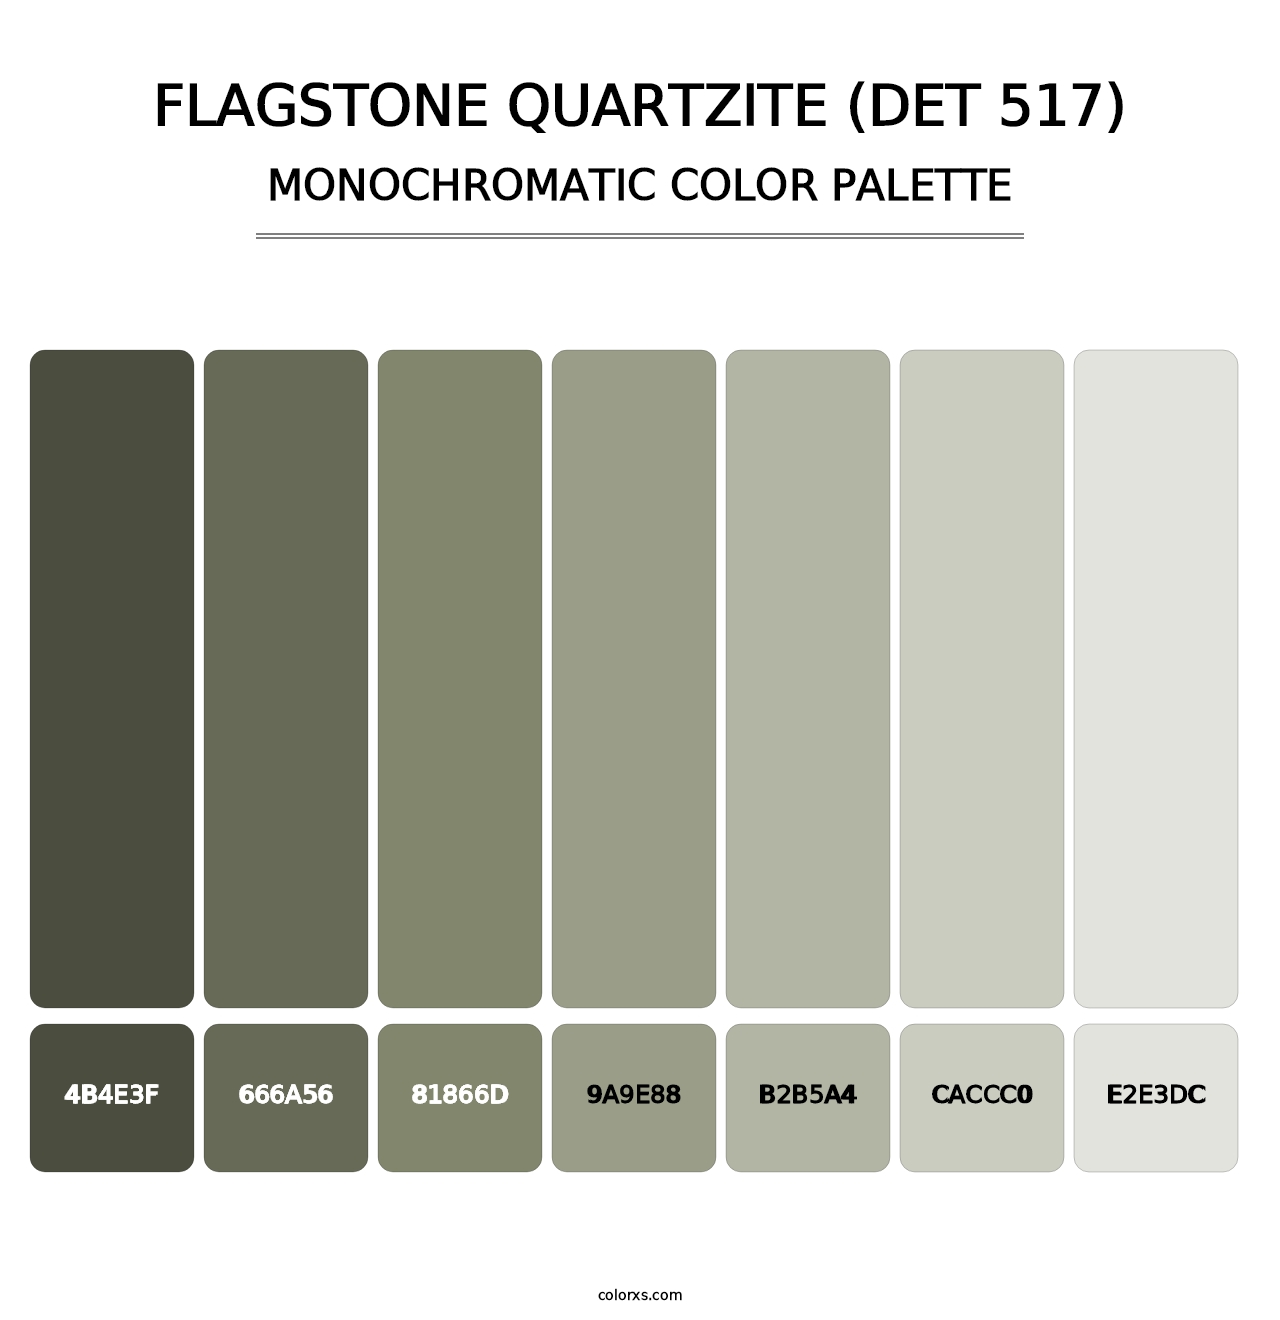 Flagstone Quartzite (DET 517) - Monochromatic Color Palette